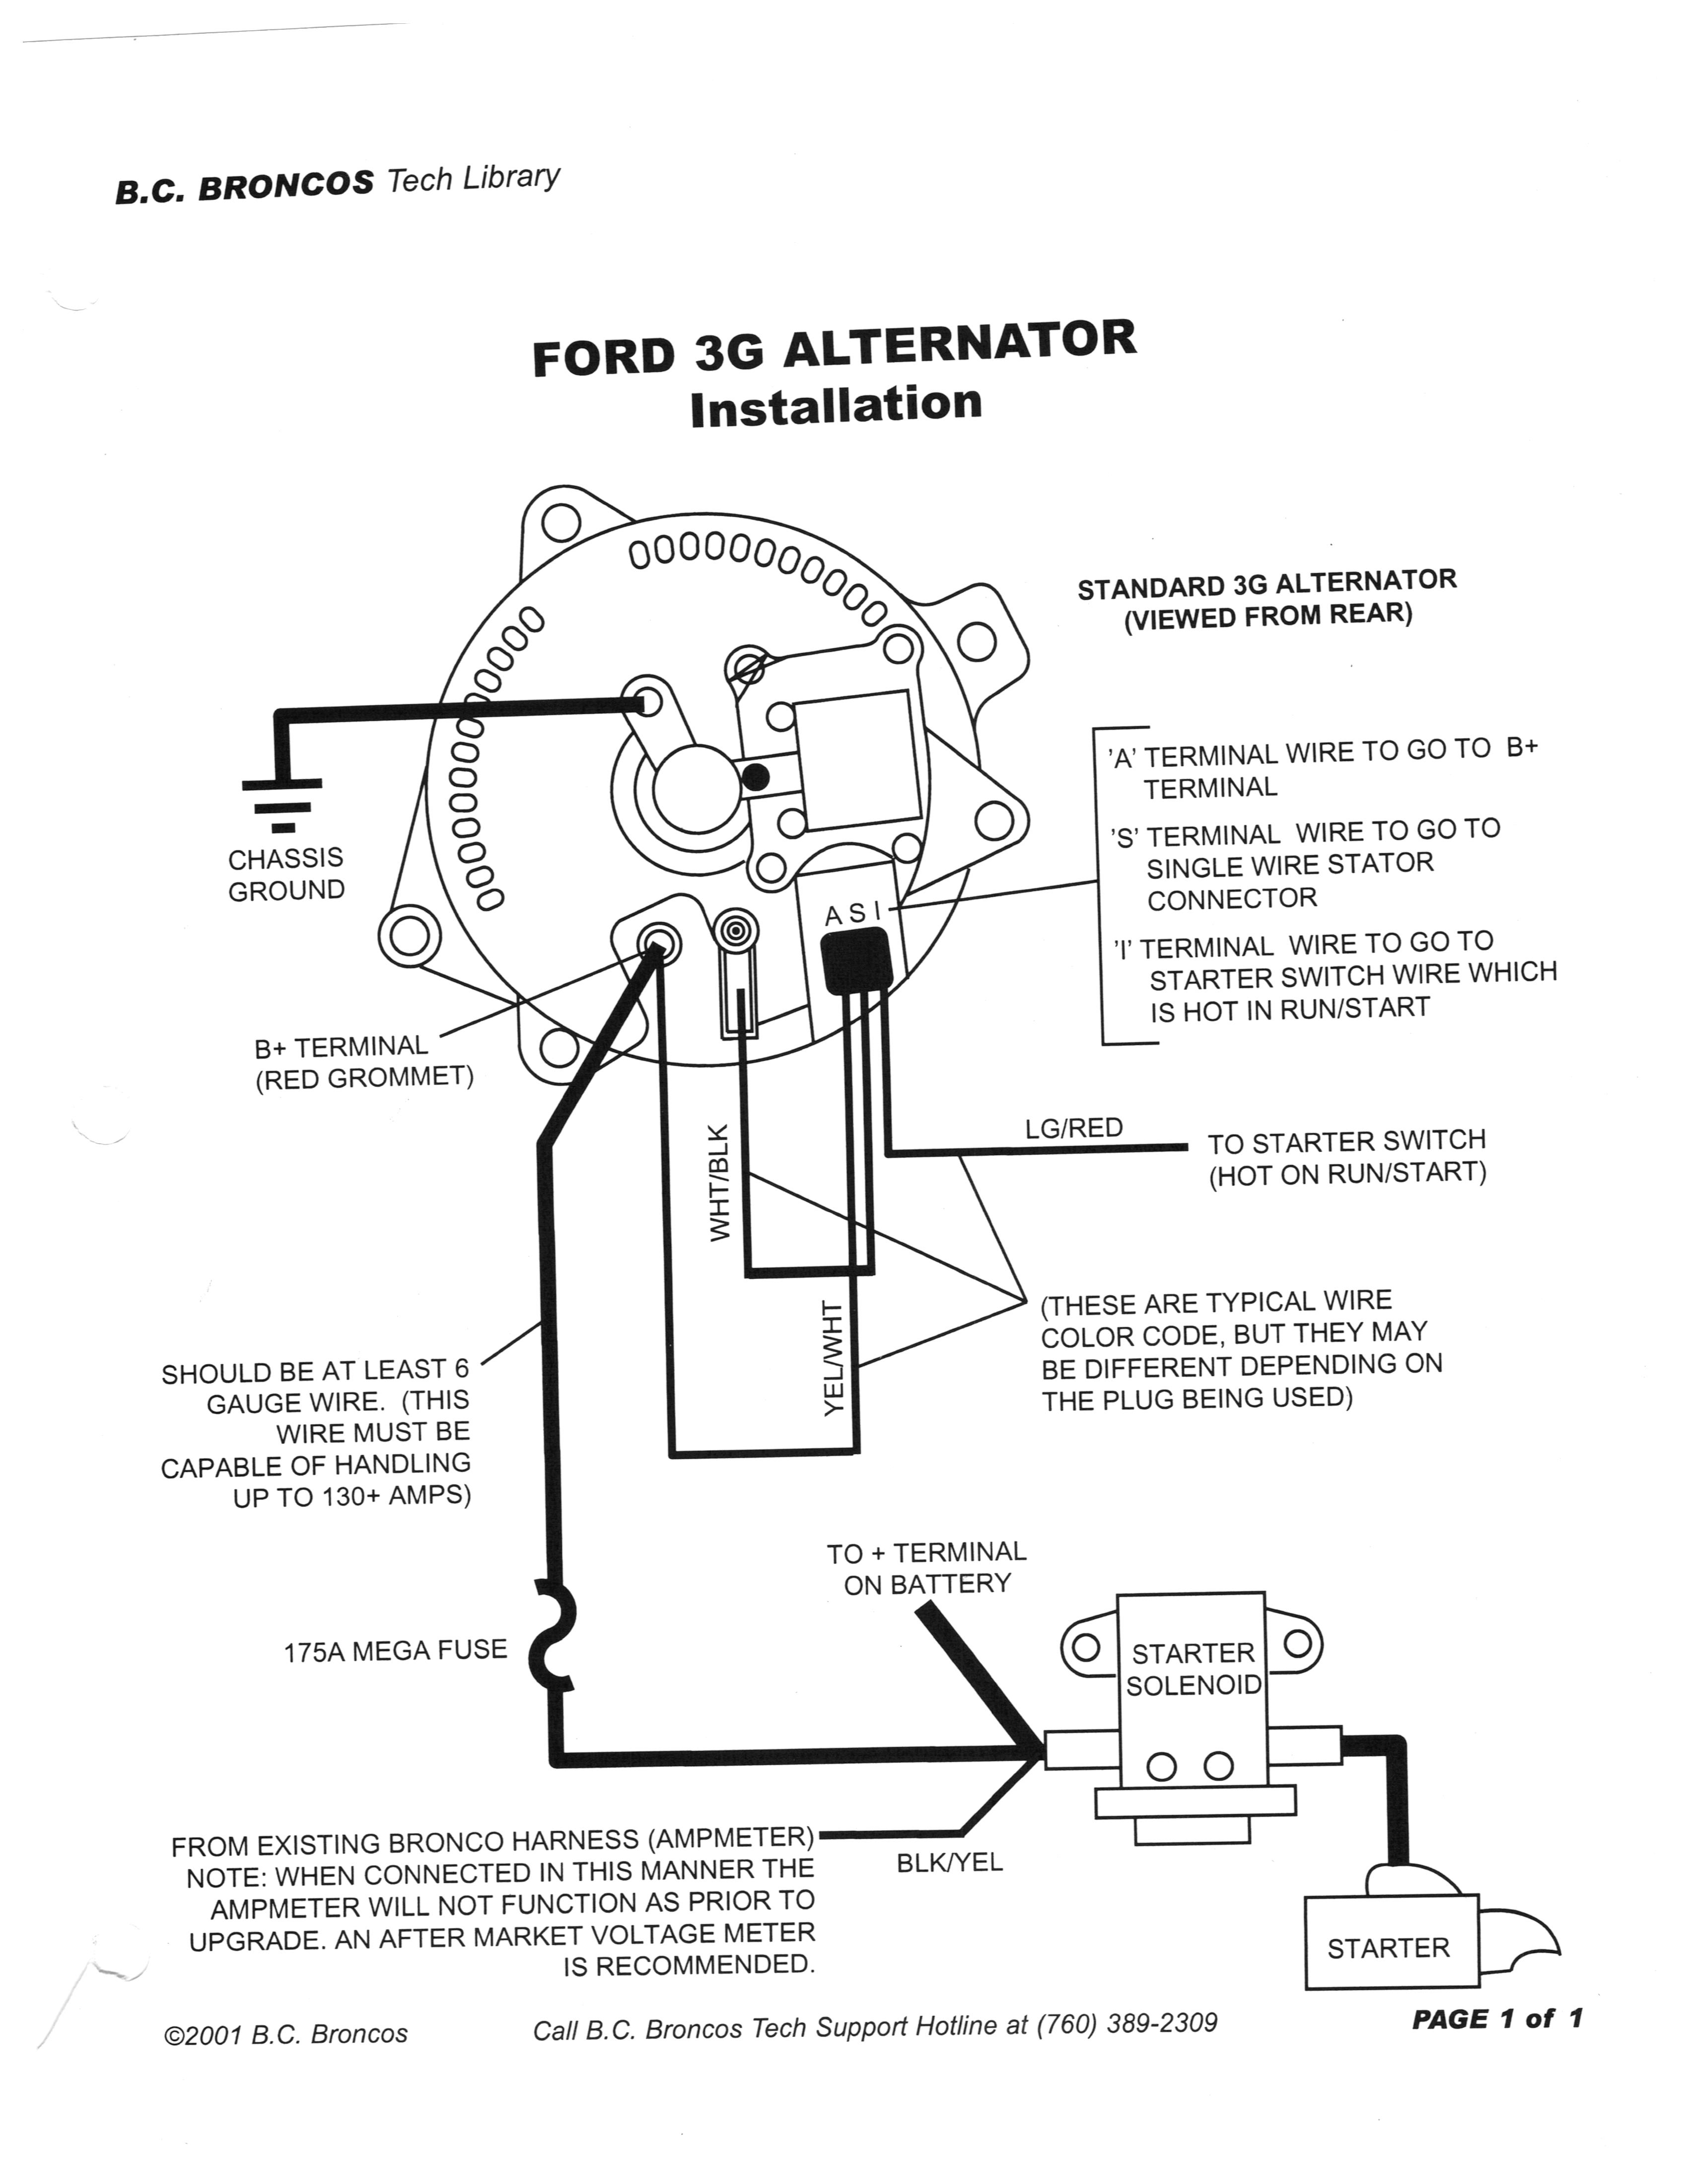 81 Ford Alternator Wiring Schematic | Wiring Diagram - Ford Alternator Wiring Diagram